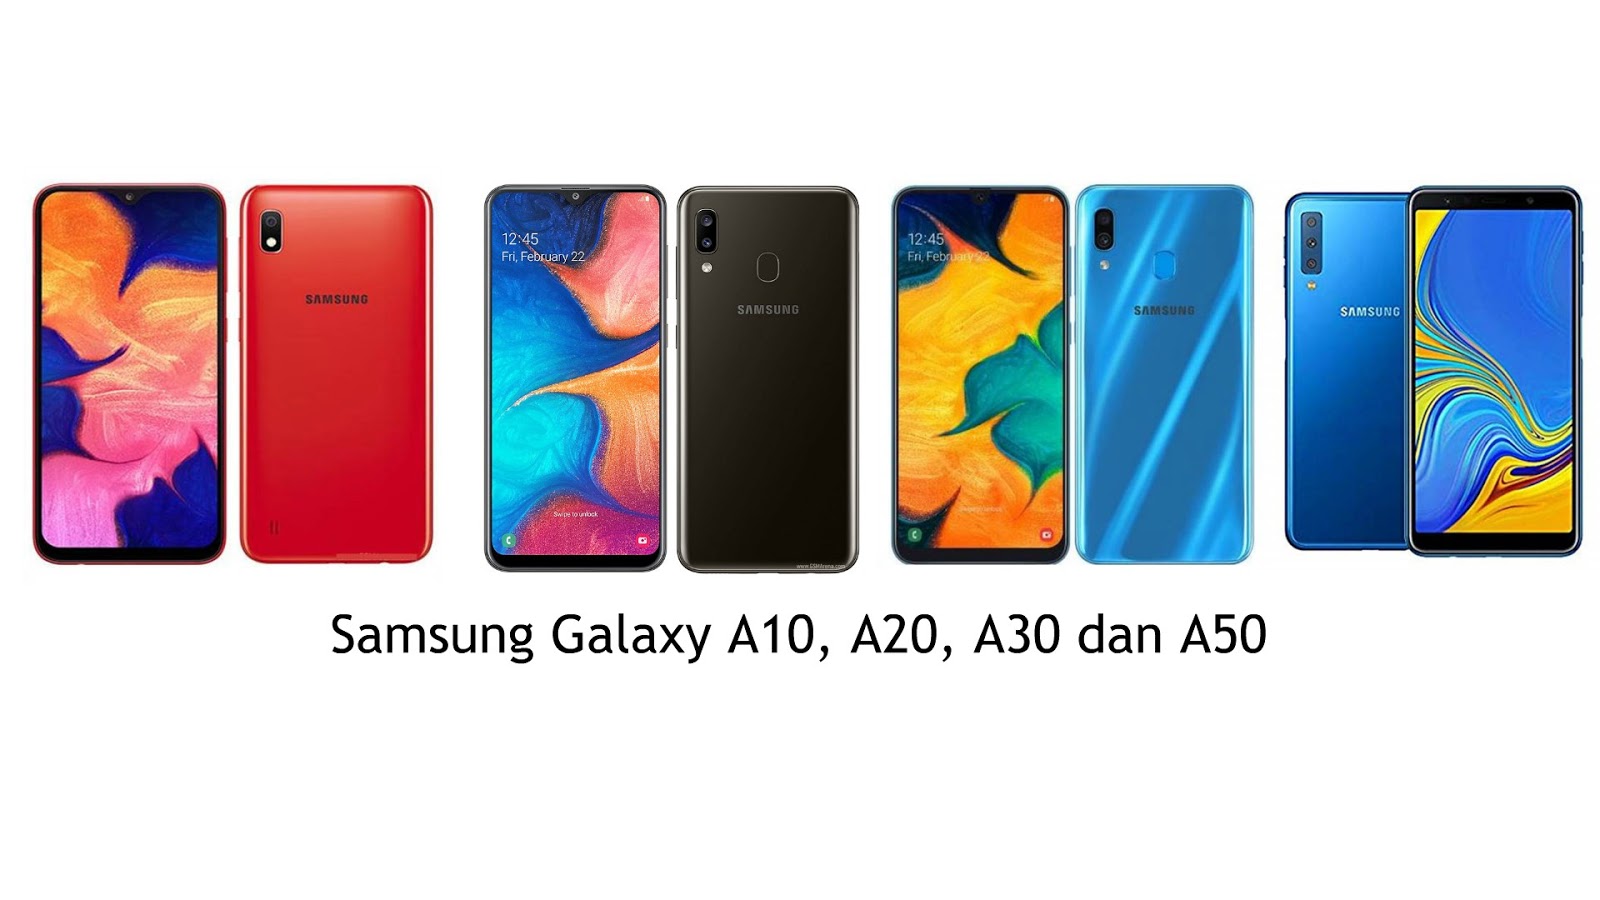 Samsung A50 Frp